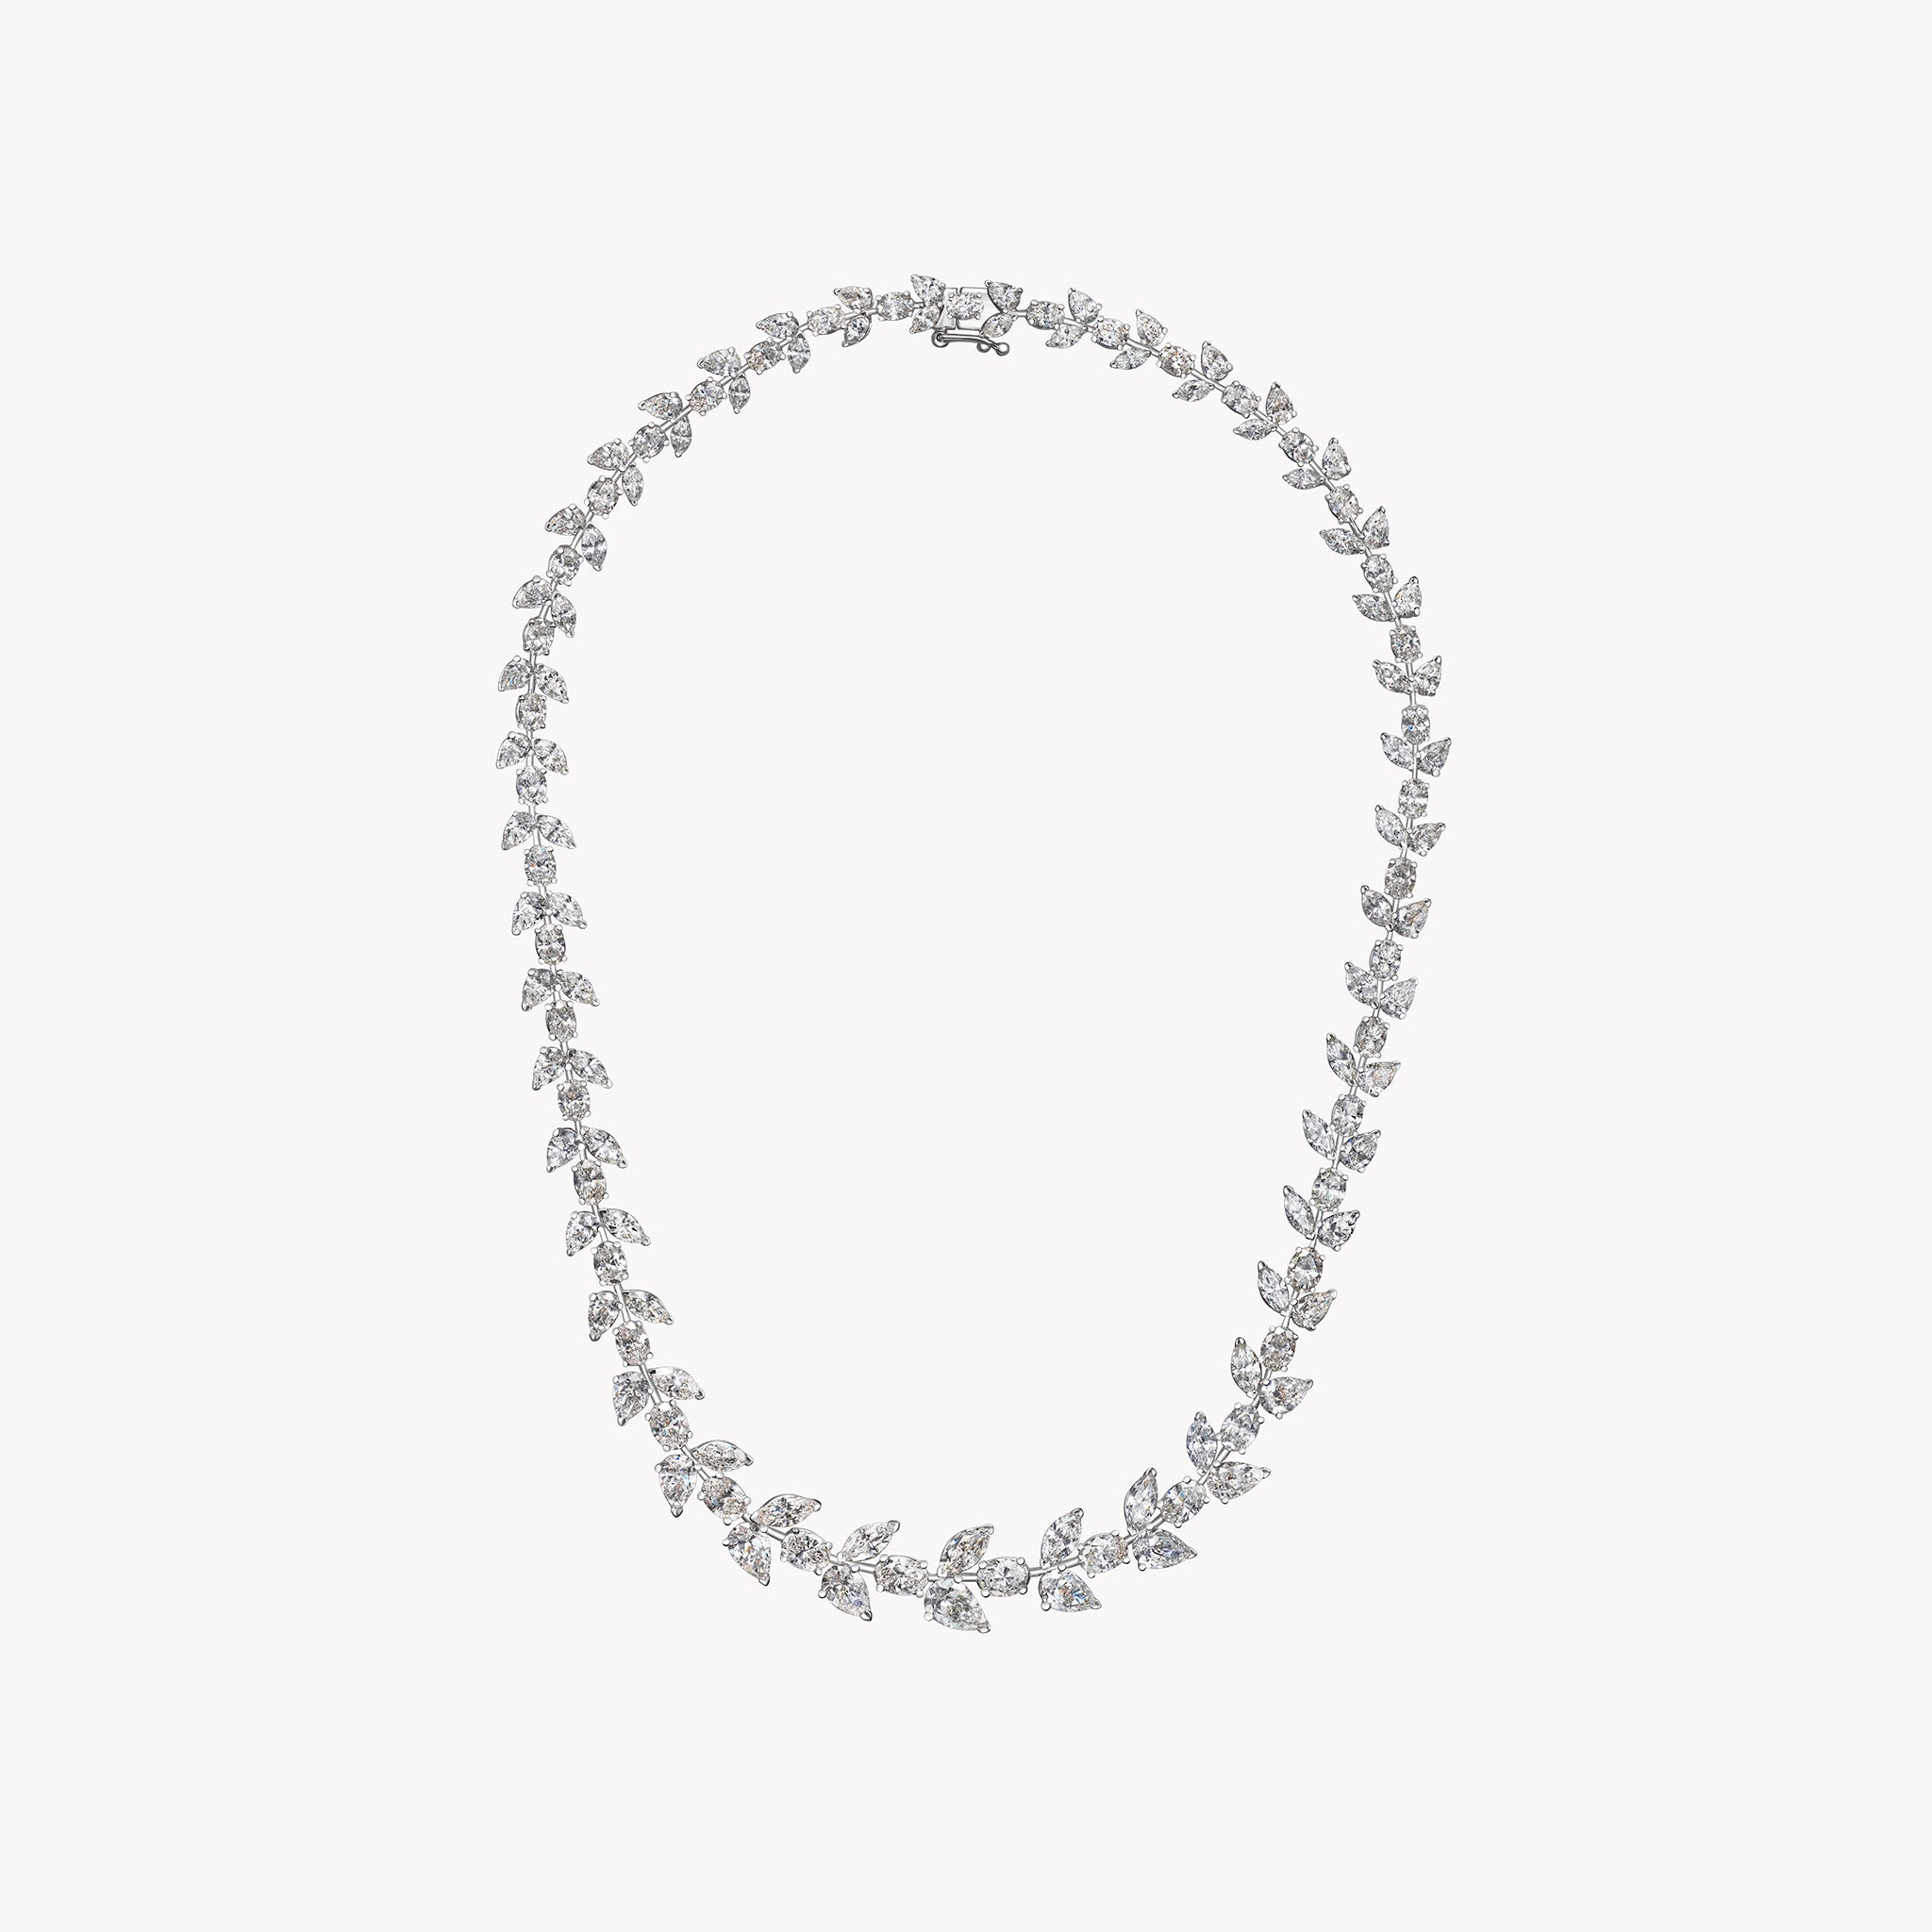 Lorelei Diamond Necklace